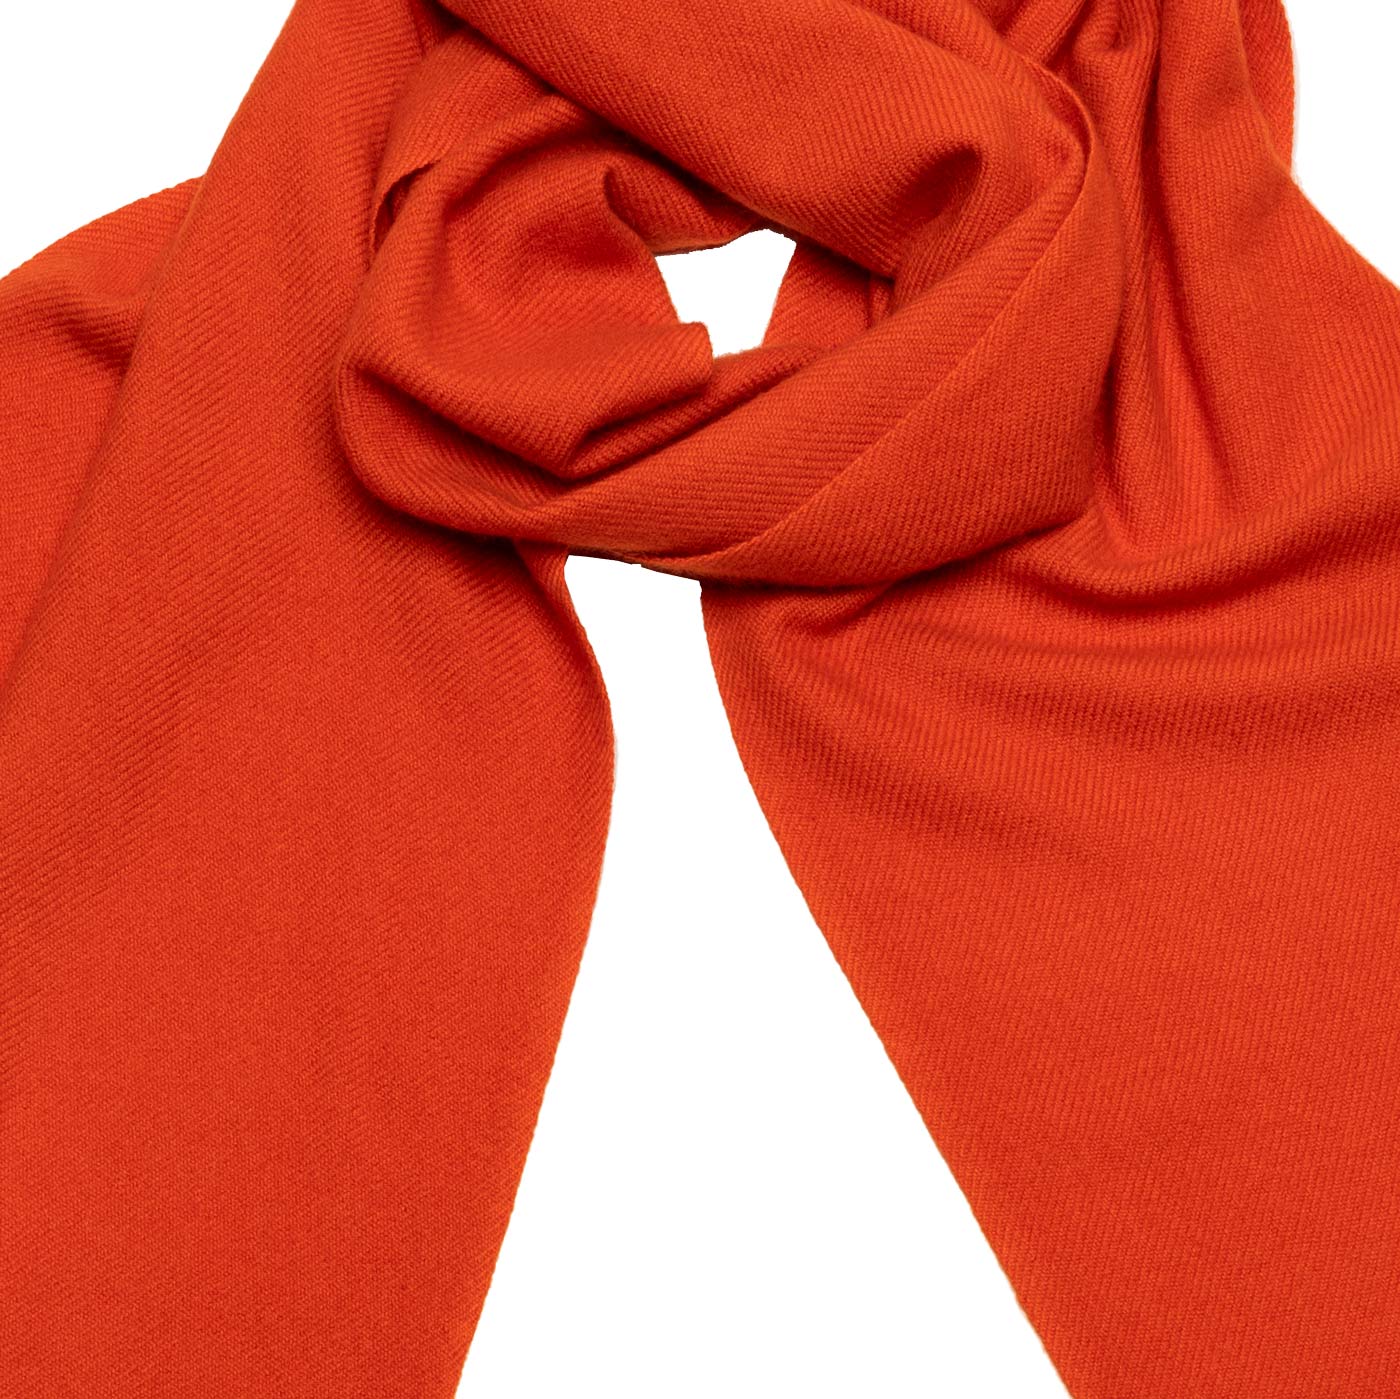 Luxuriöse Eleganz: Handgewebter 2-fädiger Cashmere-Schal in strahlendem Orange shirinsehan.com